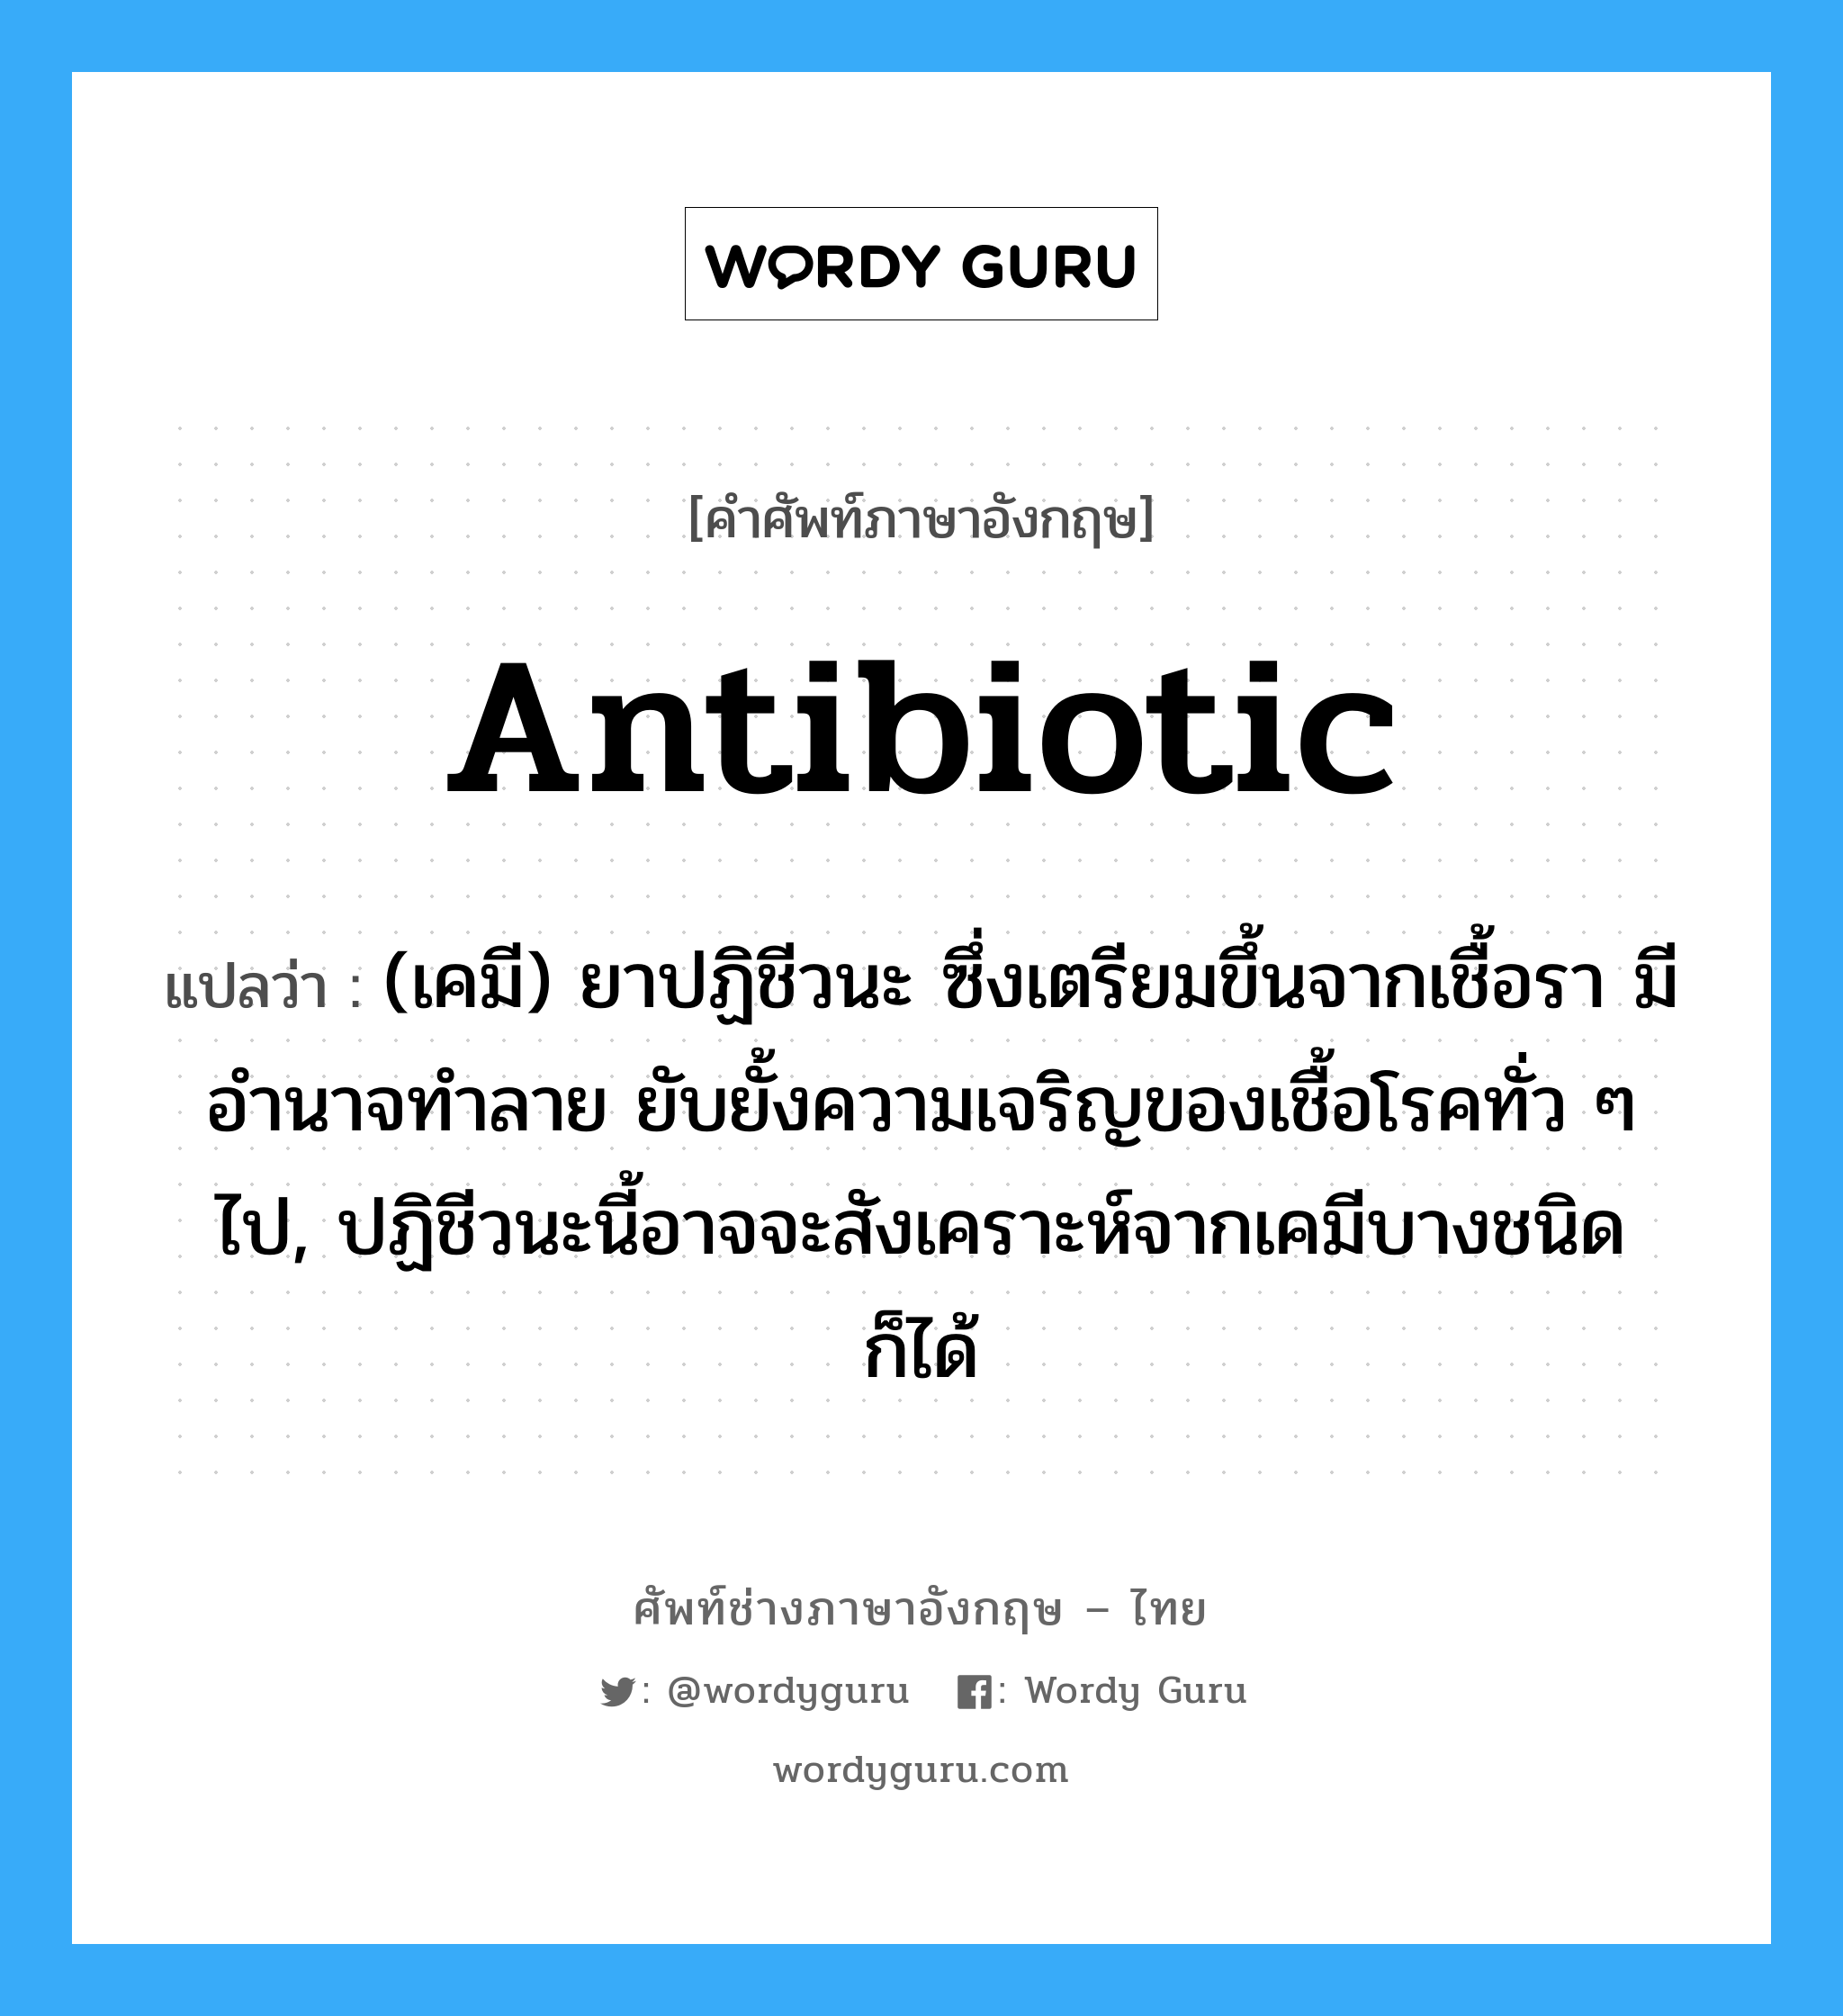 antibiotic แปลว่า?, คำศัพท์ช่างภาษาอังกฤษ - ไทย antibiotic คำศัพท์ภาษาอังกฤษ antibiotic แปลว่า (เคมี) ยาปฏิชีวนะ ซึ่งเตรียมขึ้นจากเชื้อรา มีอำนาจทำลาย ยับยั้งความเจริญของเชื้อโรคทั่ว ๆ ไป, ปฏิชีวนะนี้อาจจะสังเคราะห์จากเคมีบางชนิดก็ได้